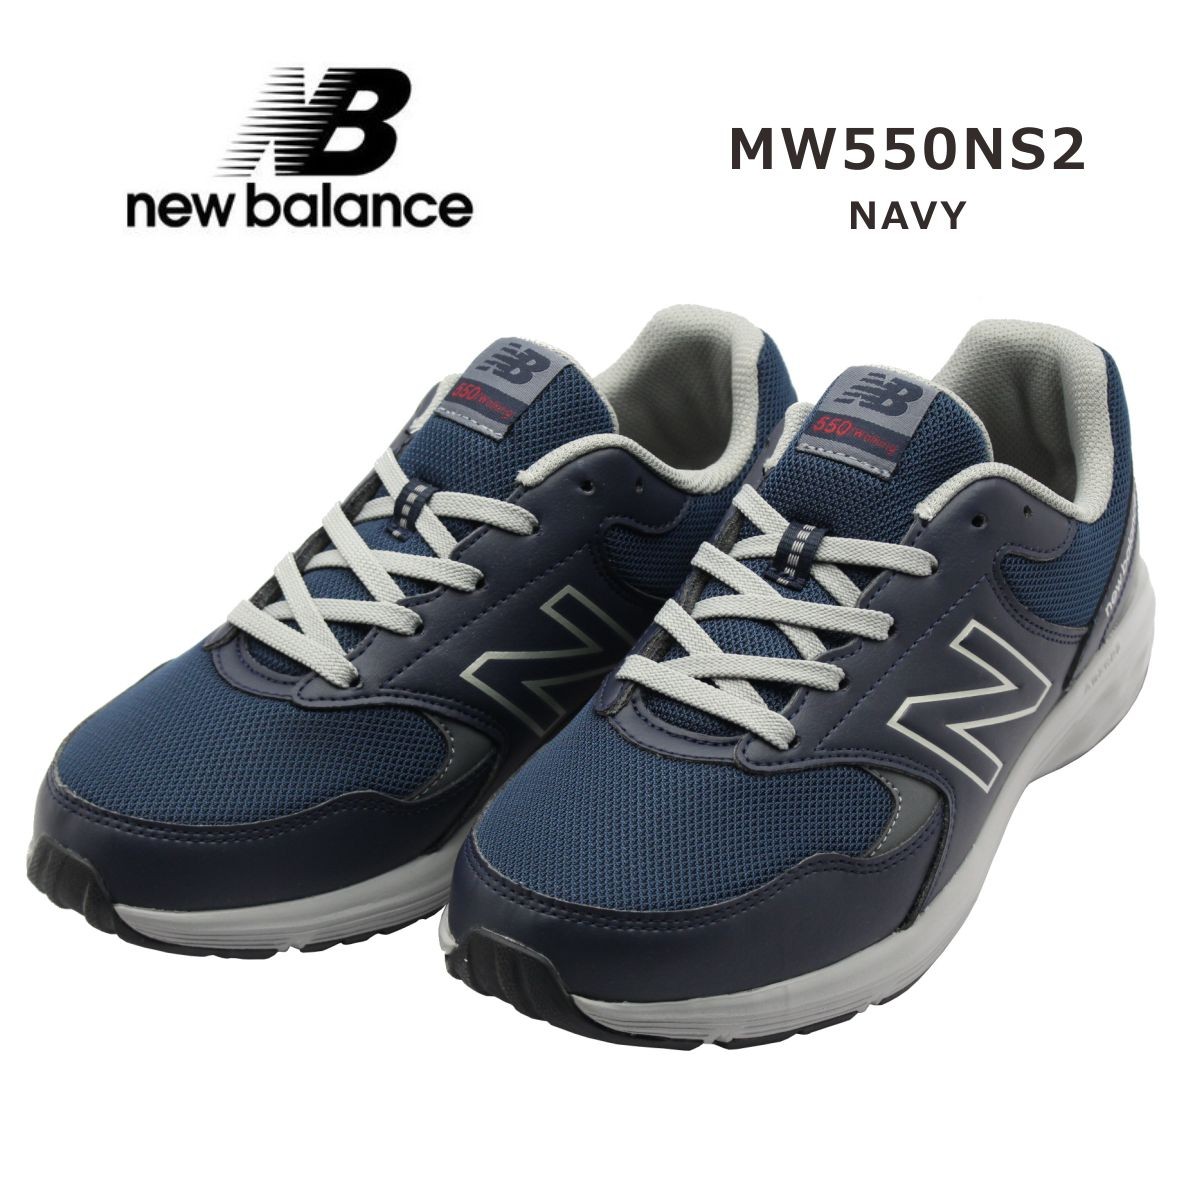 New Balance ニューバランス Mw550ns2 メンズ スニーカー 幅広ワイド ネイビー Nbmw550ns2 ミッキー靴店 通販 Yahoo ショッピング